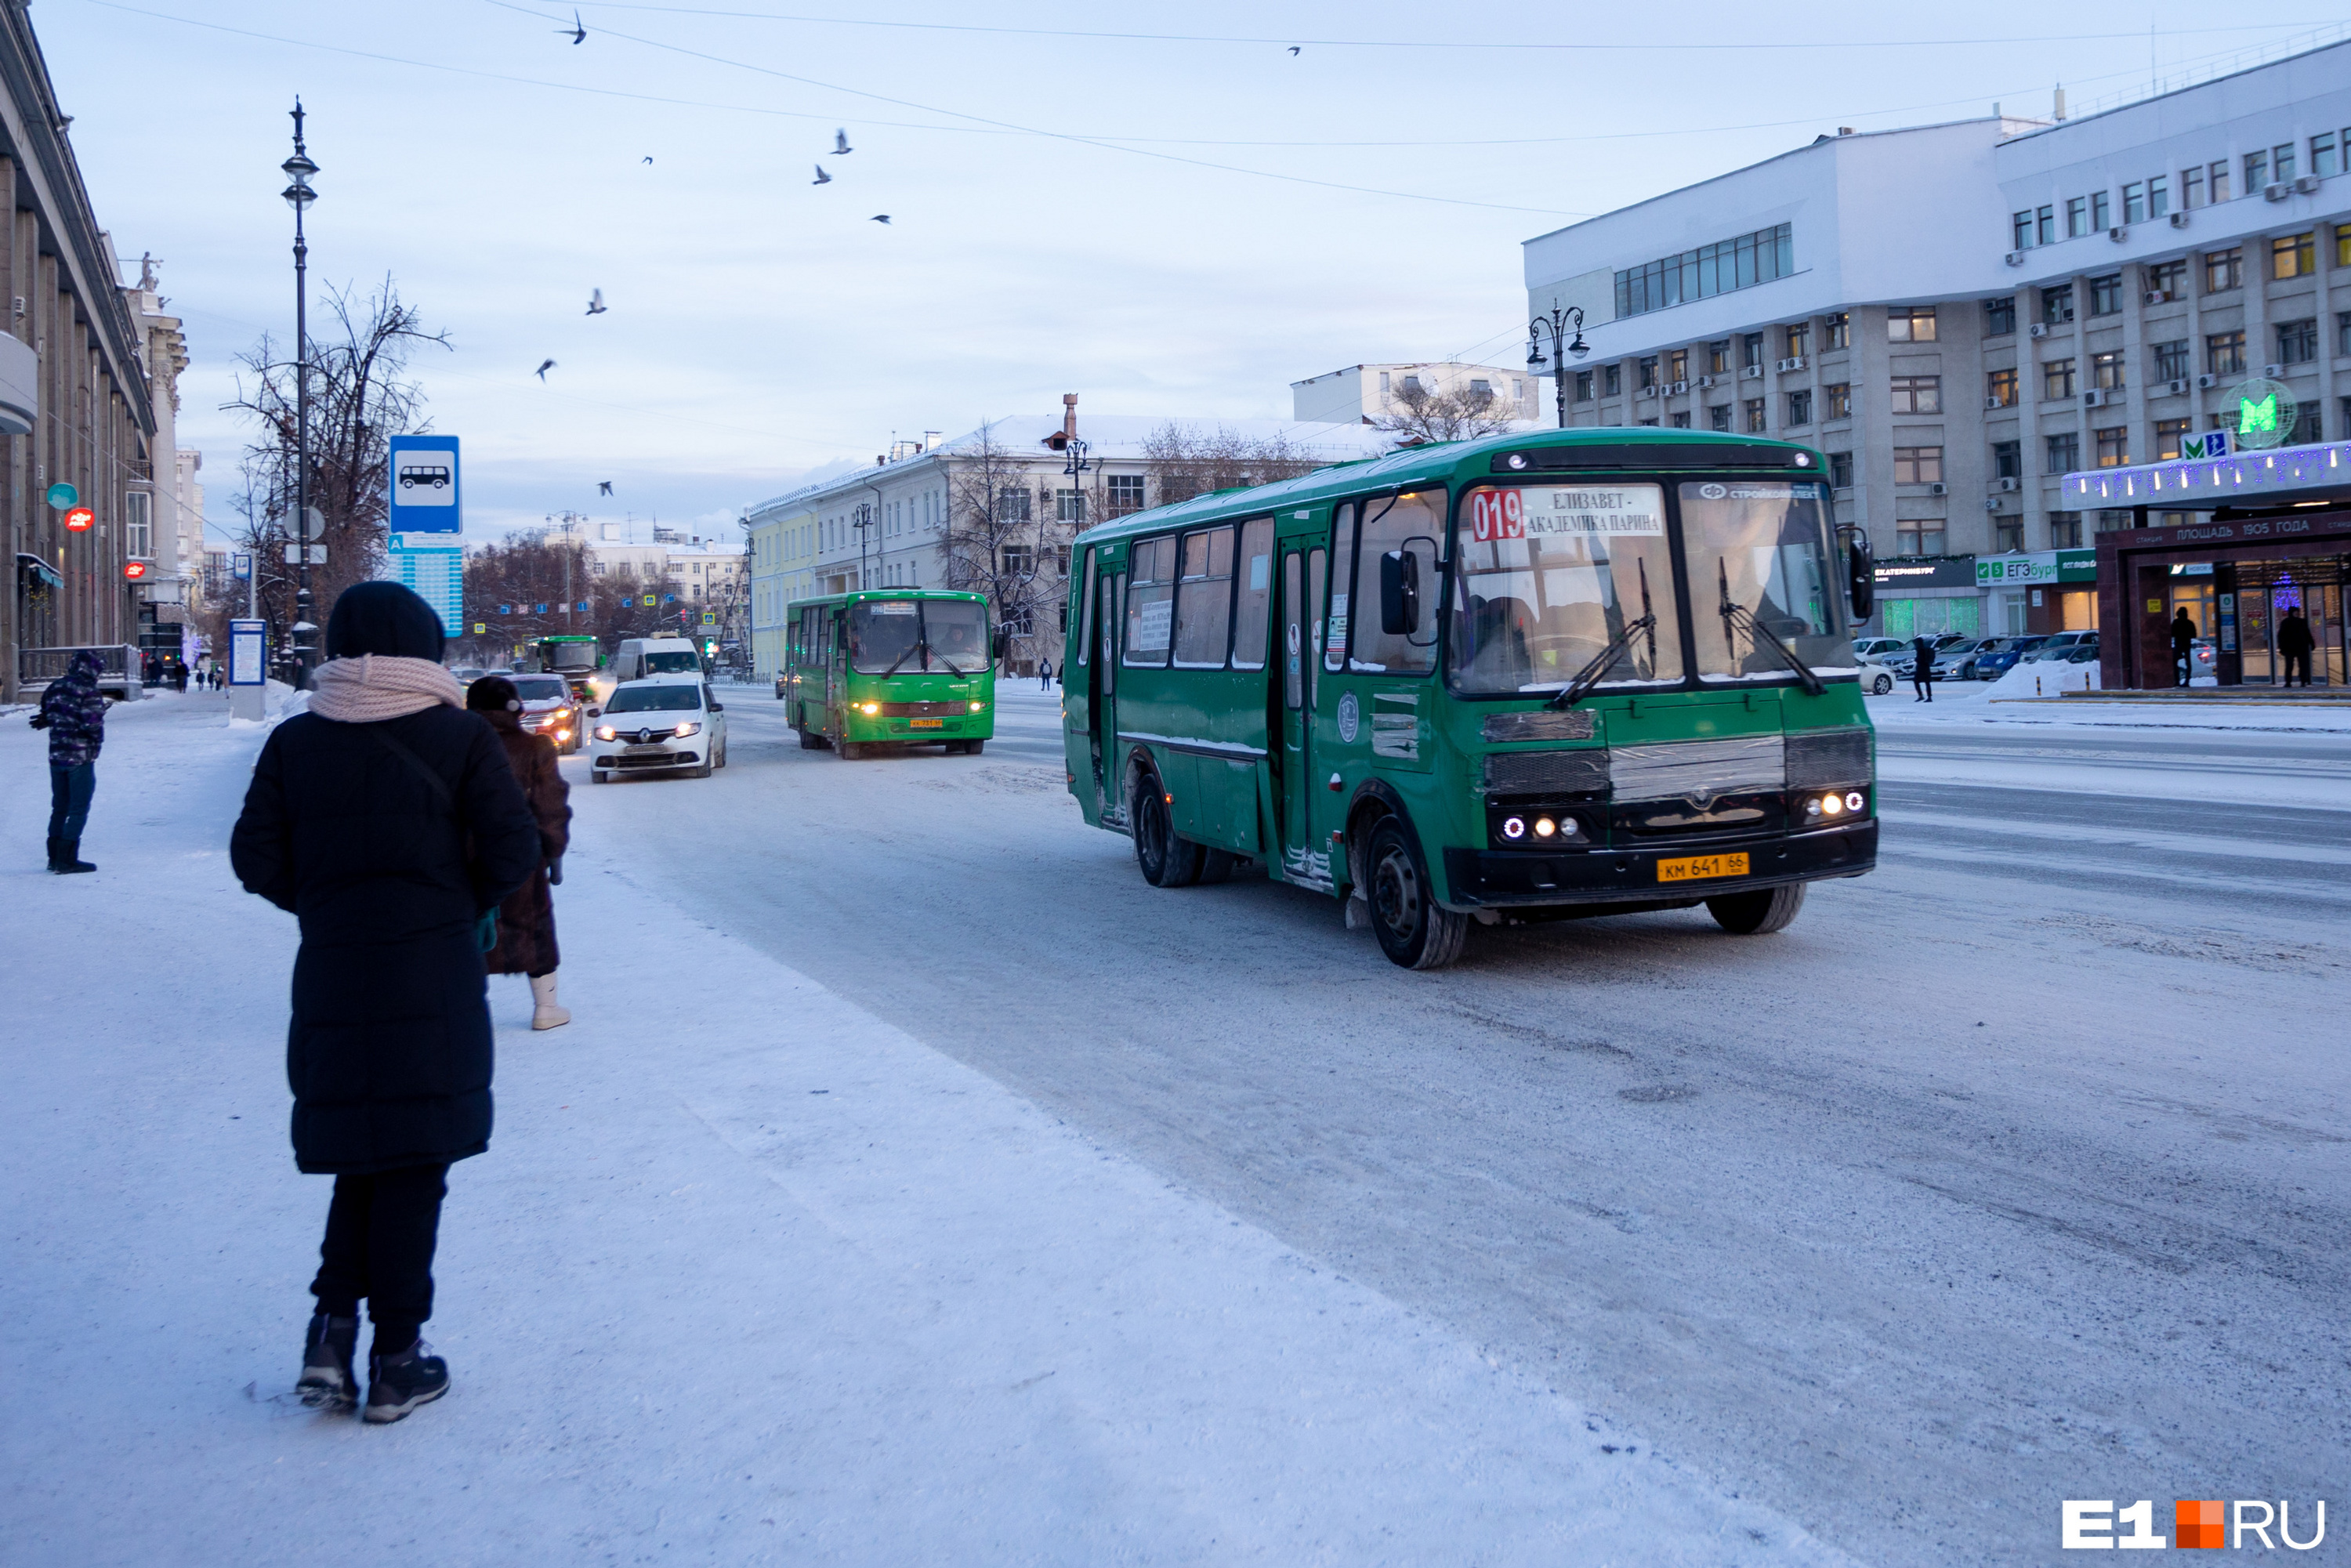 Холодно-то как! Фоторепортаж из замороженного Екатеринбурга